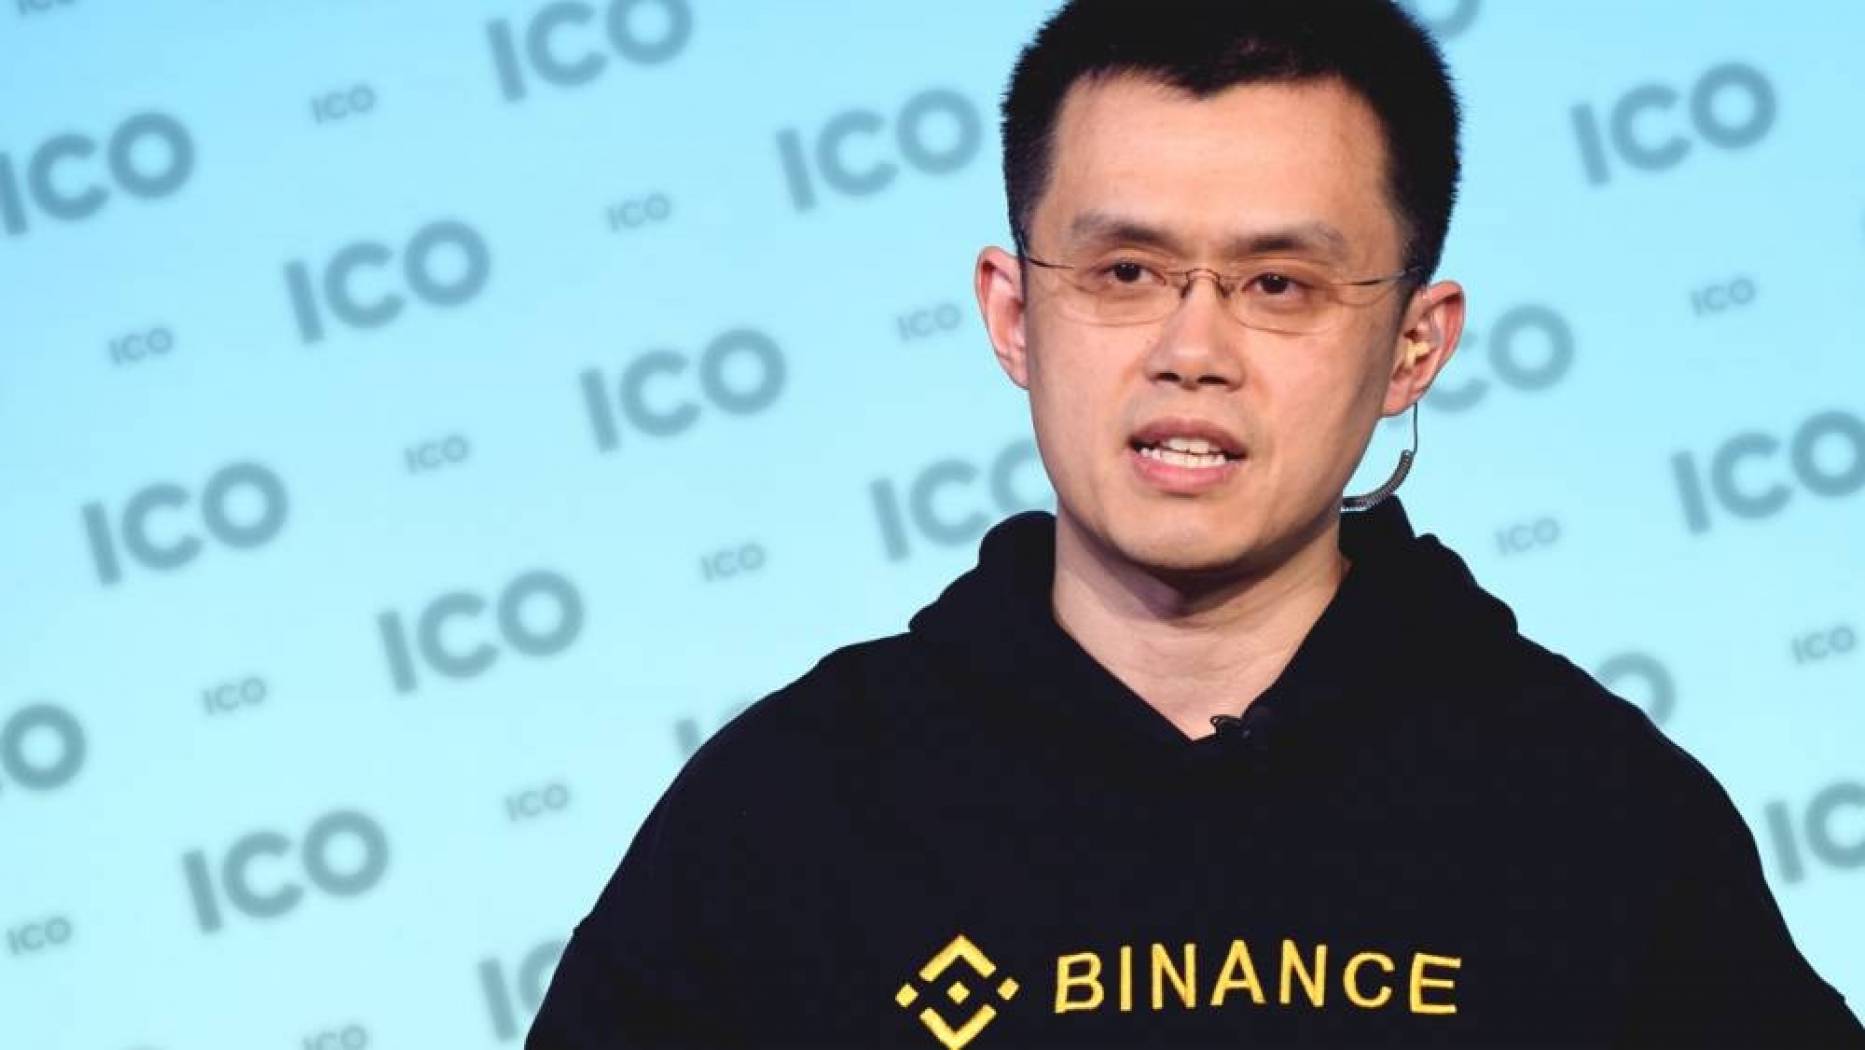 ViMoney - Giám đốc điều hành Binance Changpeng Zhao (CZ) đã vượt qua người đồng sáng lập Bitmain trong danh sách Người giàu toàn cầu Hurun mới nhất